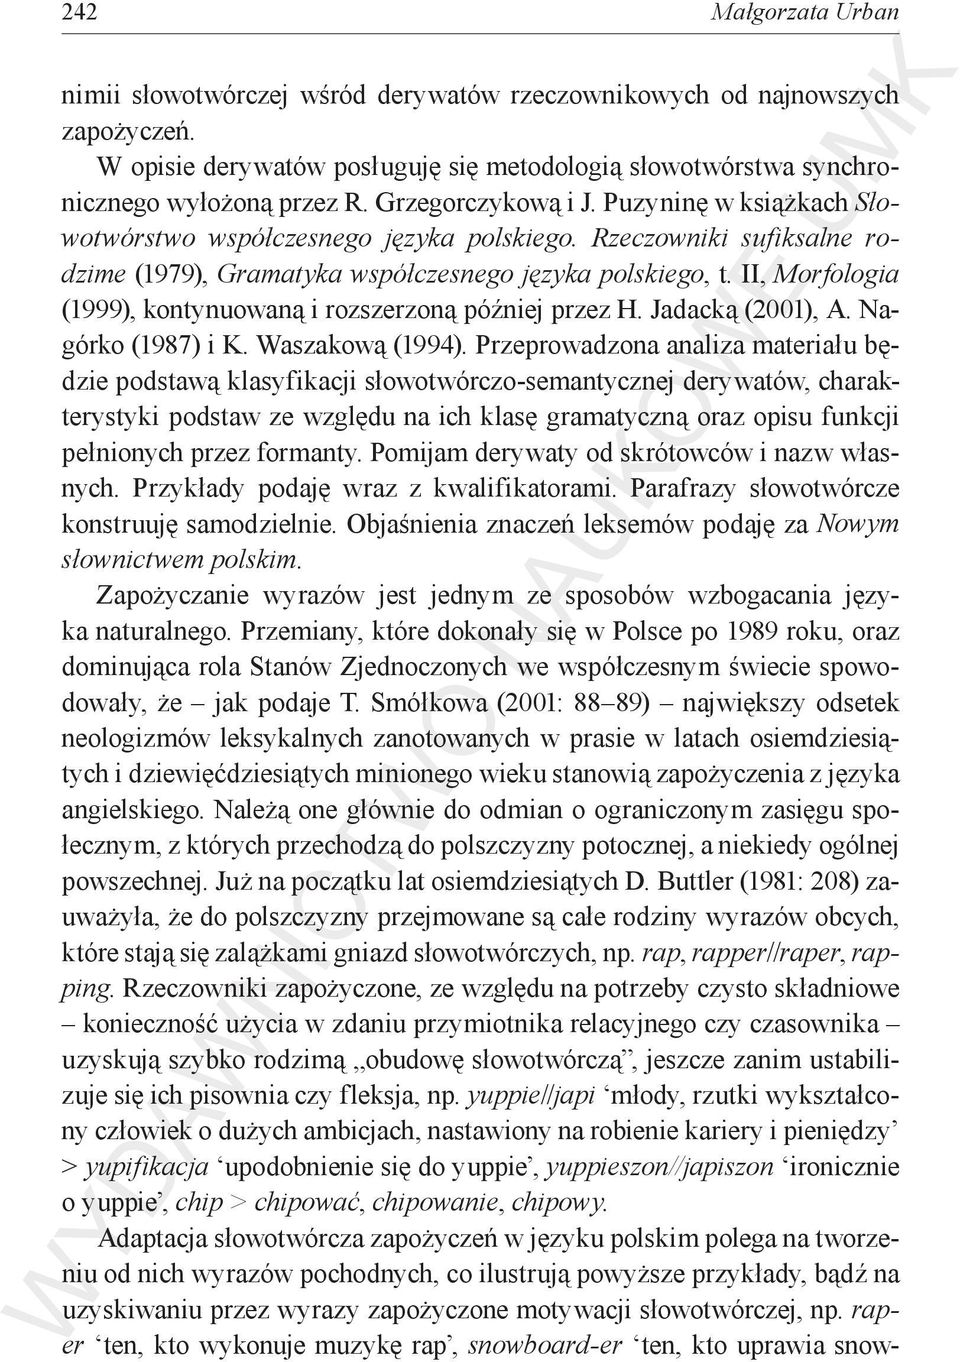 II, Morfologia (1999), kontynuowaną i rozszerzoną później przez H. Jadacką (2001), A. Nagórko (1987) i K. Waszakową (1994).